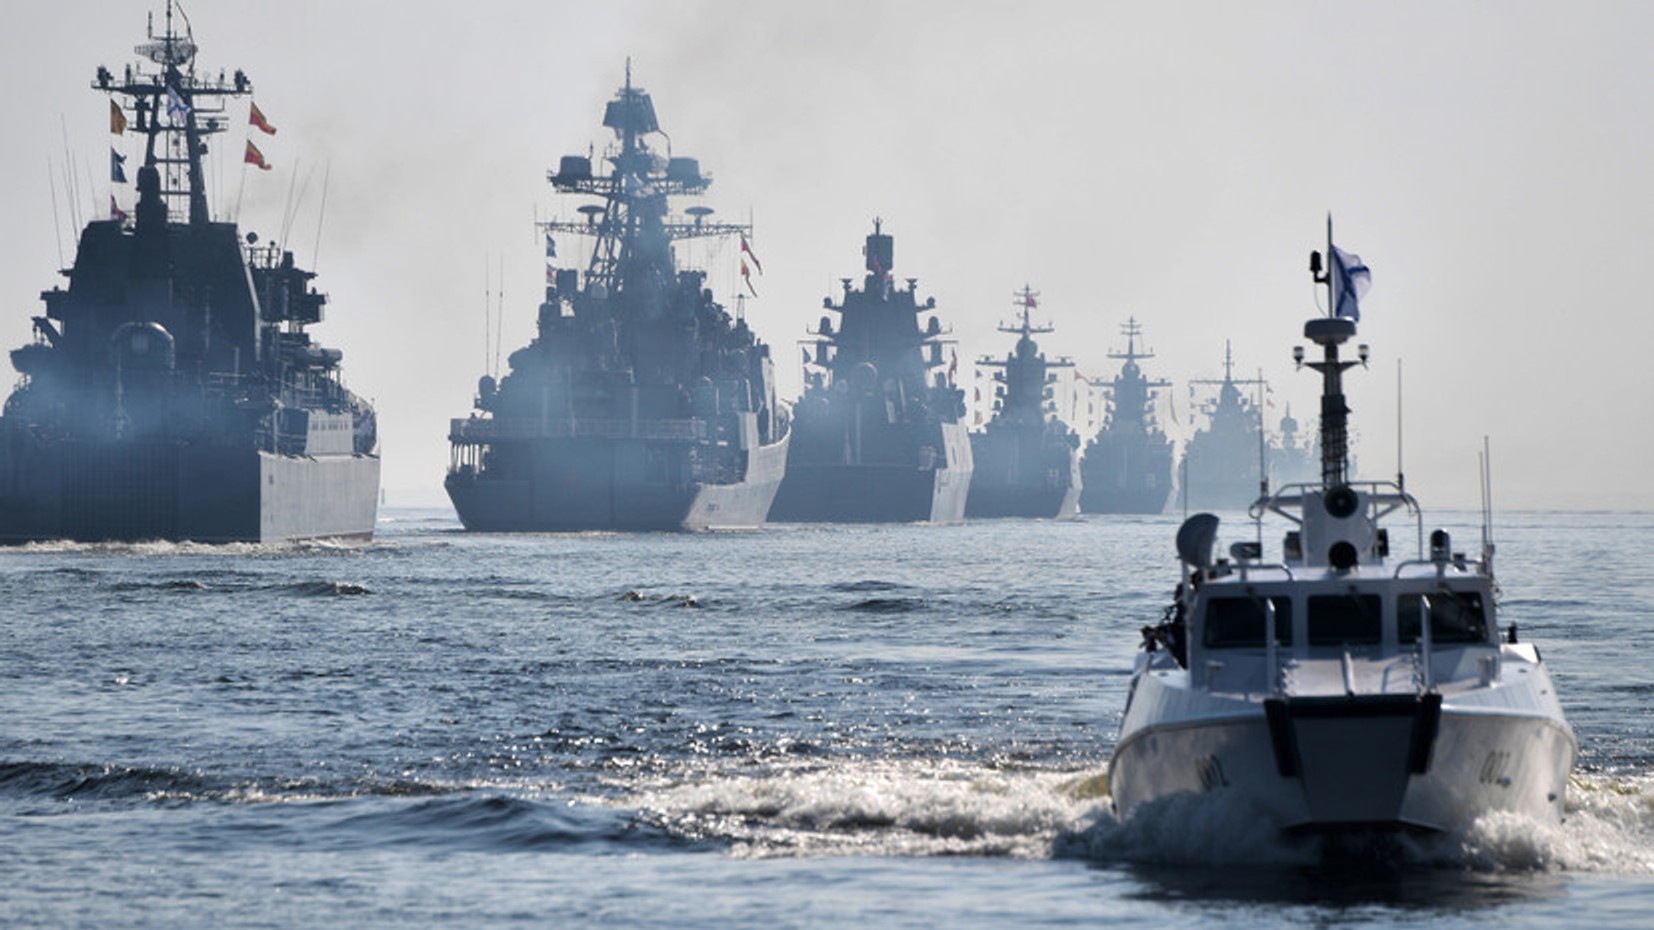 Разведка Норвегии пояснила, что никаких изменений в размещении ядерного оружия на кораблях России не произошло. СМИ неверно перевели доклад